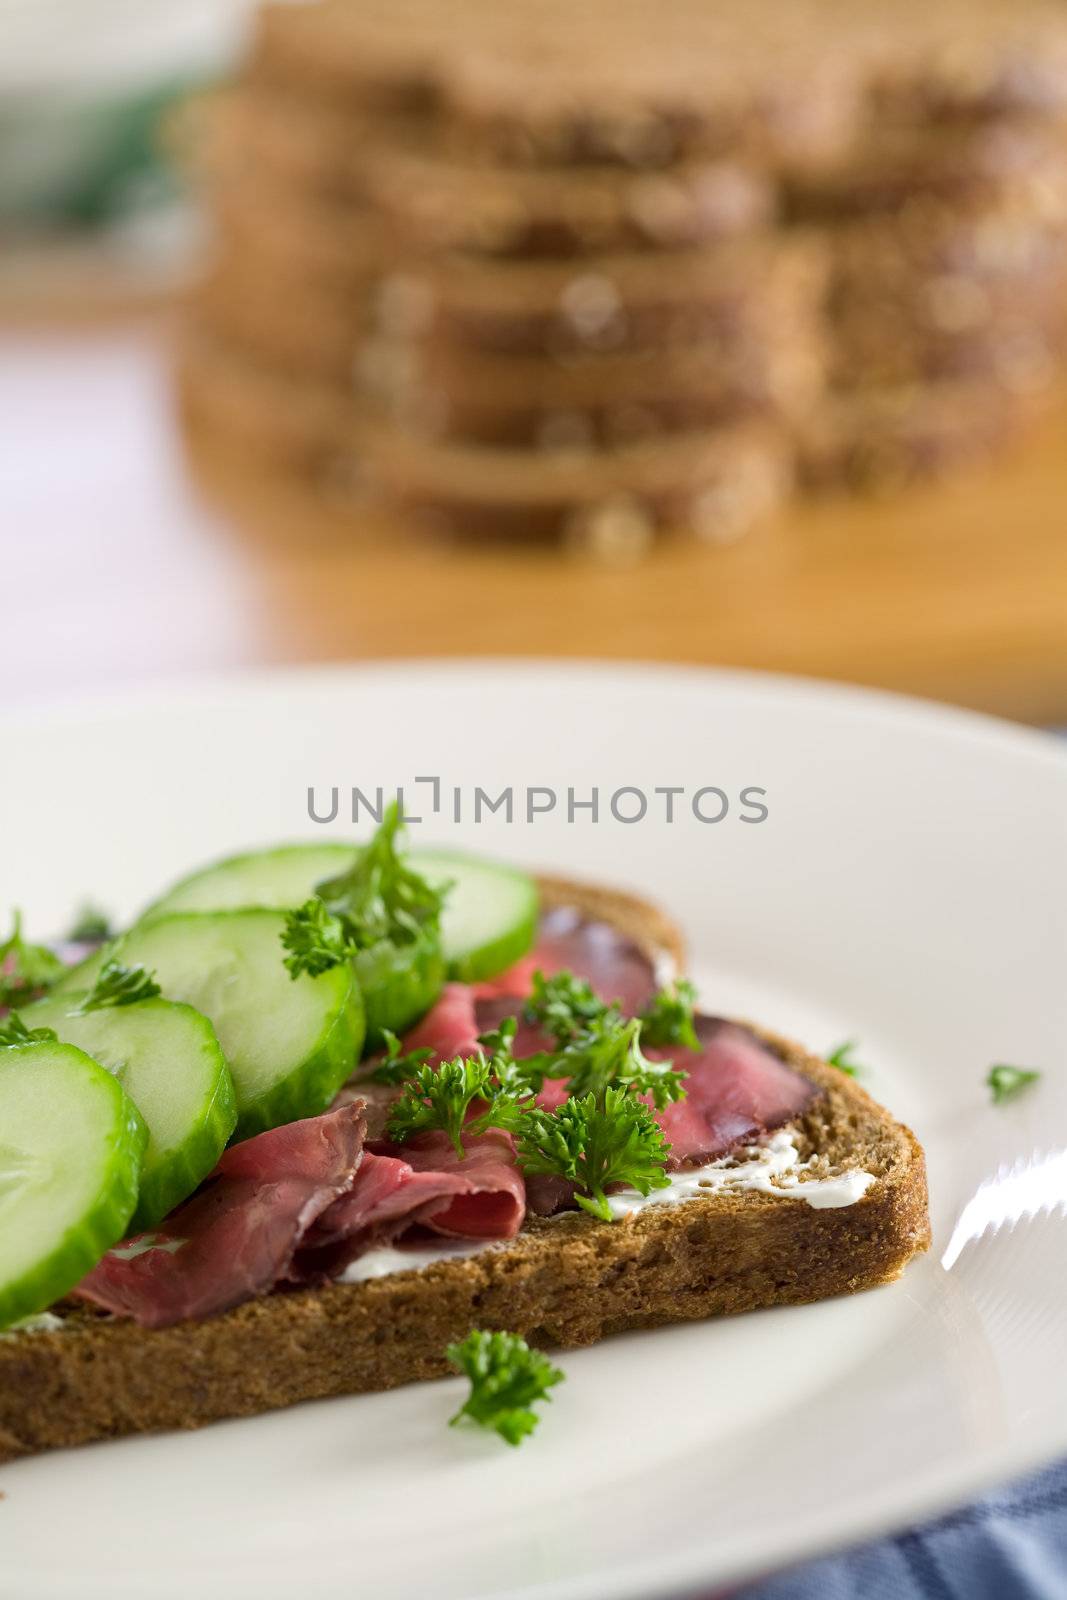 Healthy sandwich by Fotosmurf